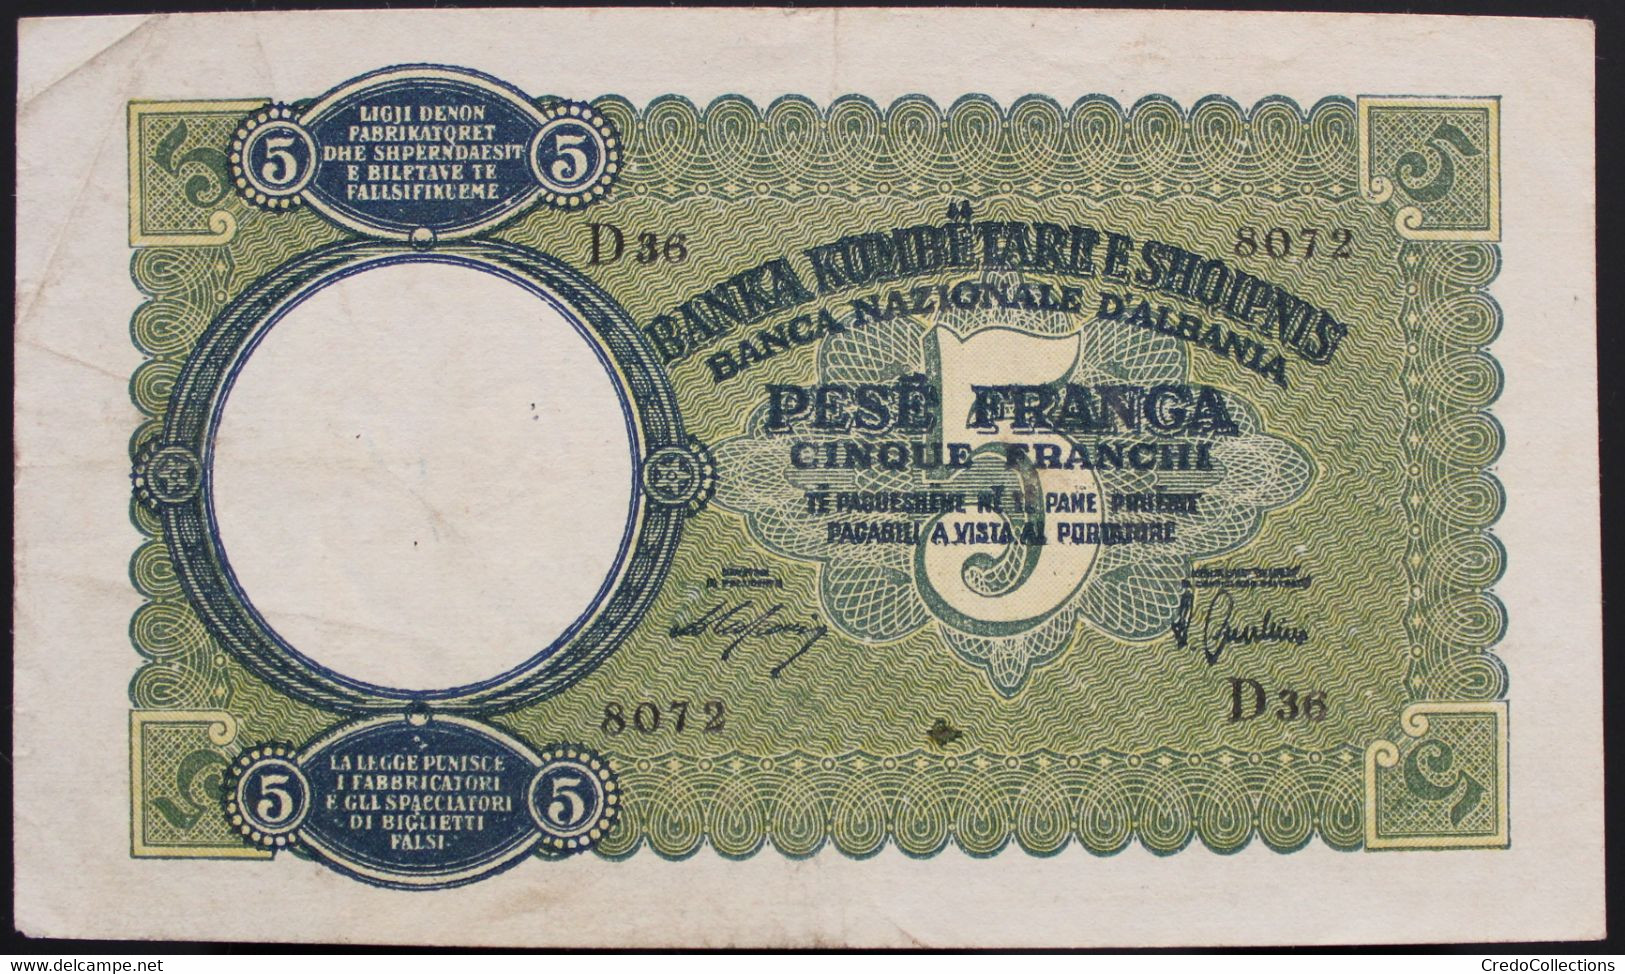 Albanie - Lot de 3 billets - 1926/1940 - B+/XF+